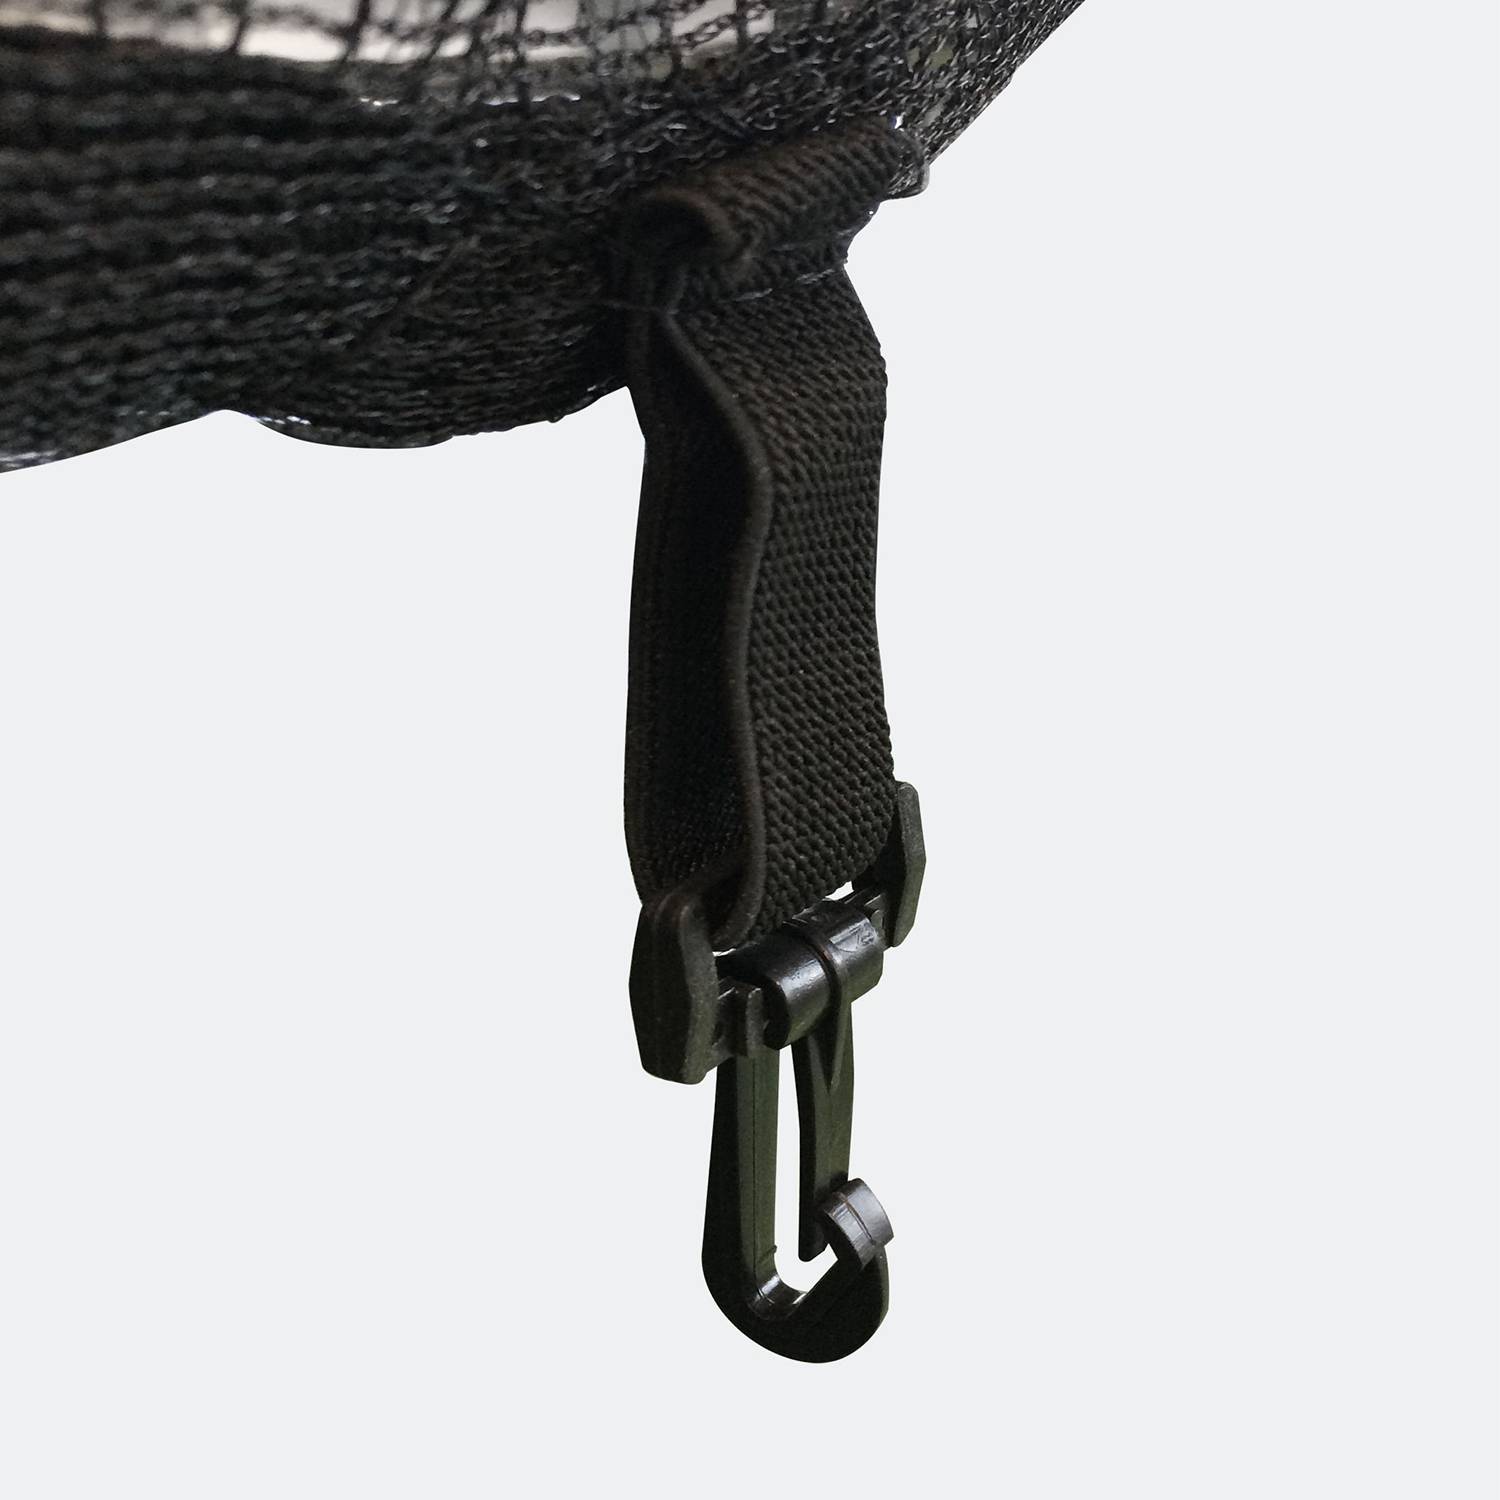 Sicherheitsnetz für sweeek Trampolin - Ø430cm, Farbe Schwarz mit gelbem Reißverschluss Photo3